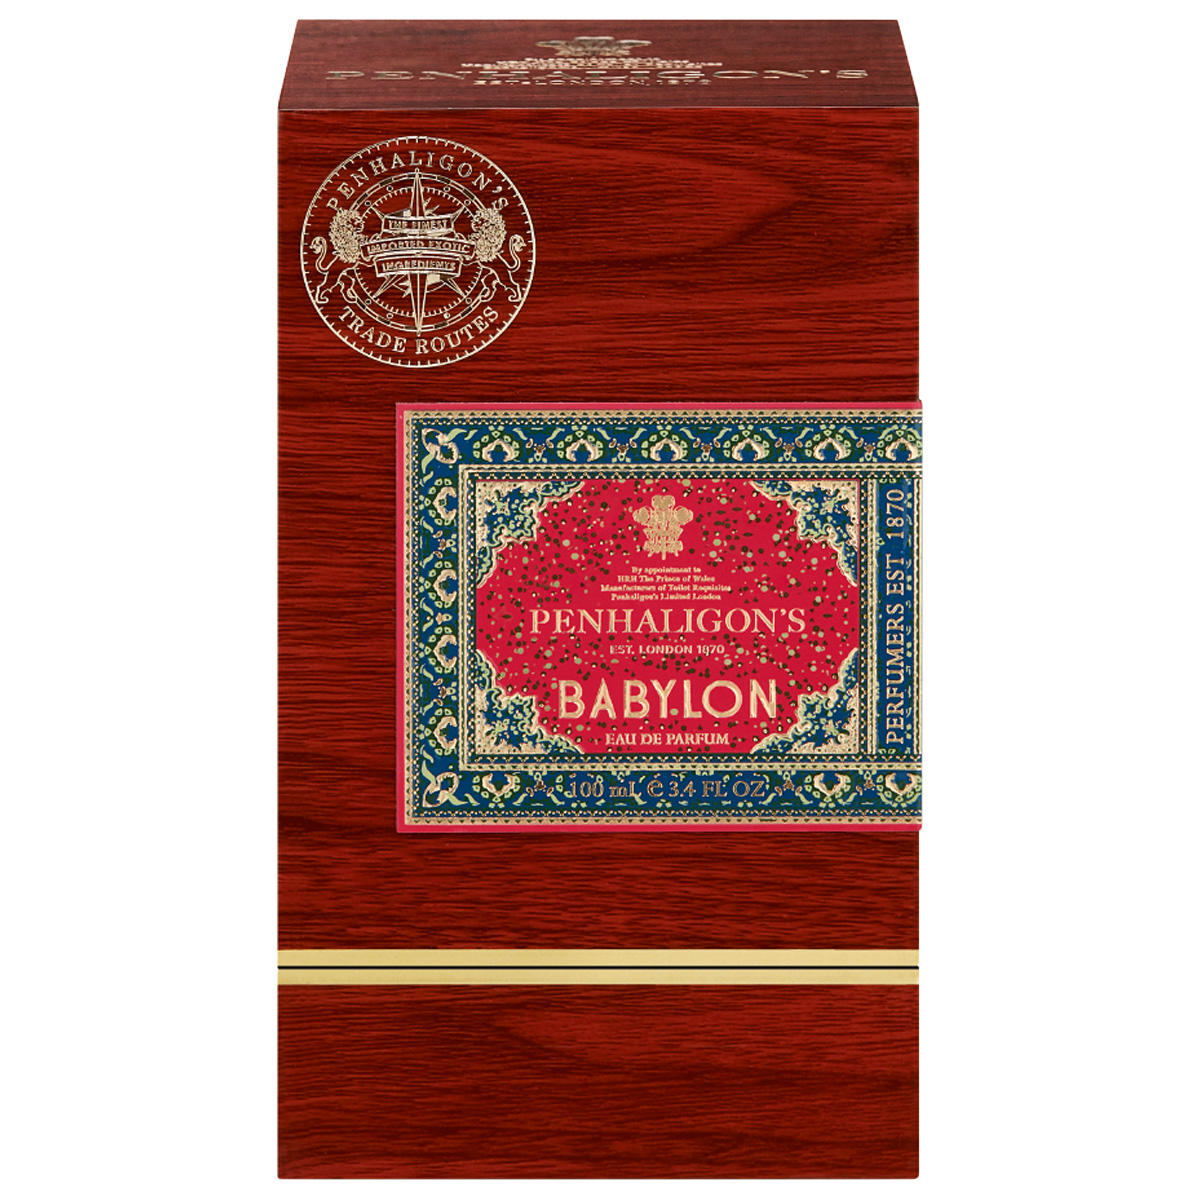 PENHALIGON'S Trade Routes Babylon Eau de Parfum 100 ml - 3